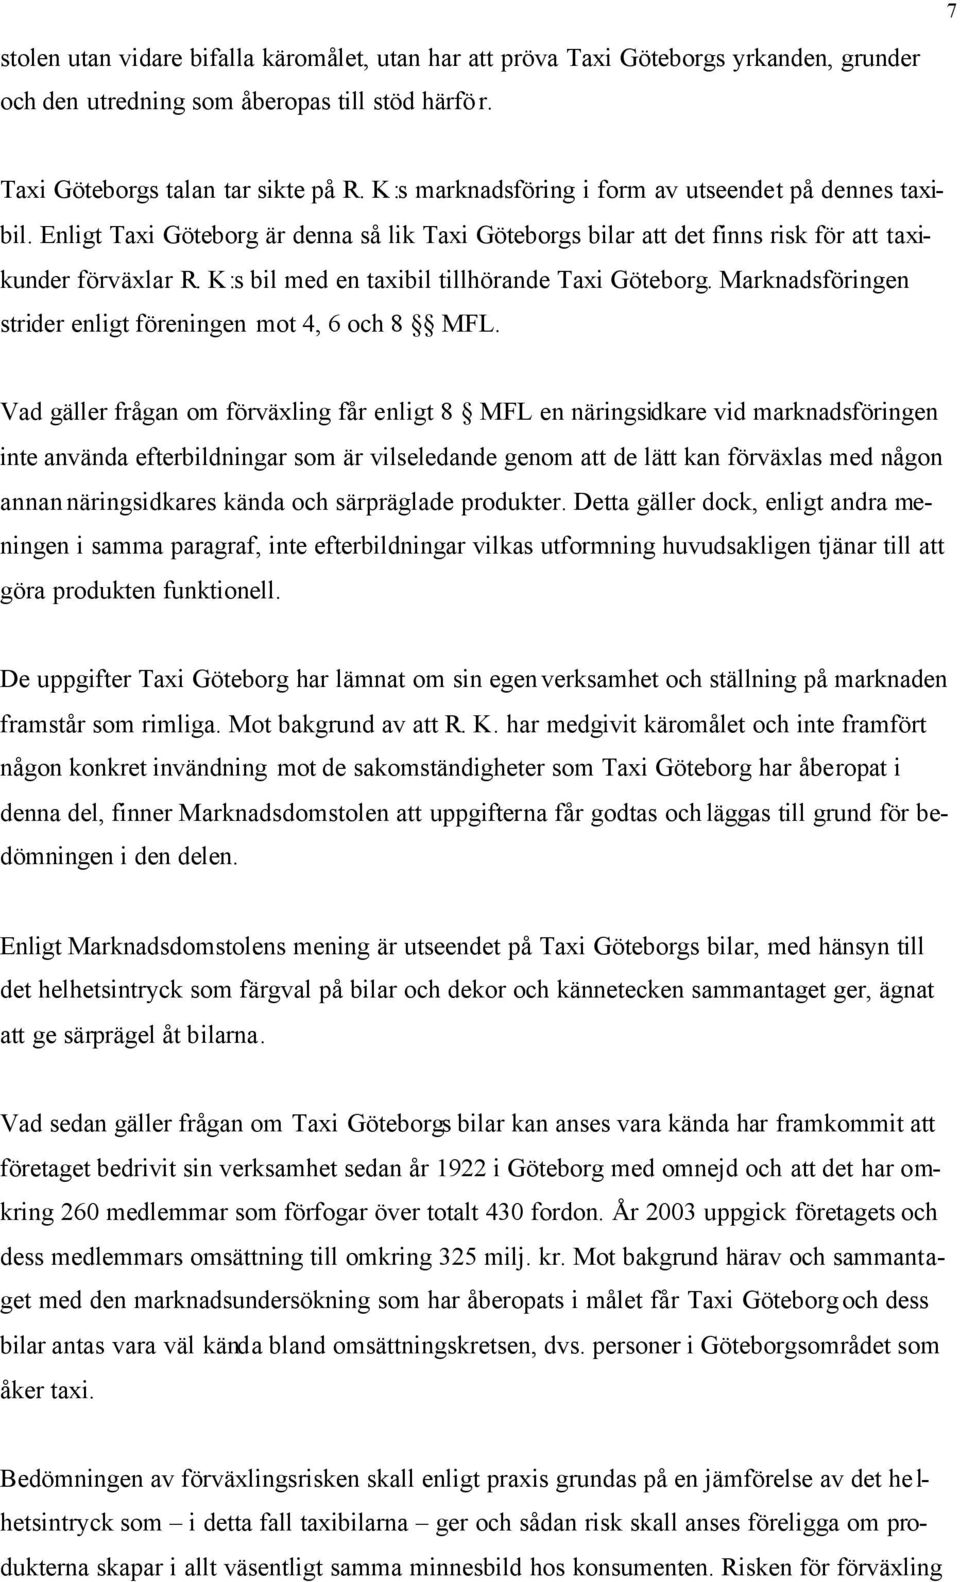 K:s bil med en taxibil tillhörande Taxi Göteborg. Marknadsföringen strider enligt föreningen mot 4, 6 och 8 MFL.